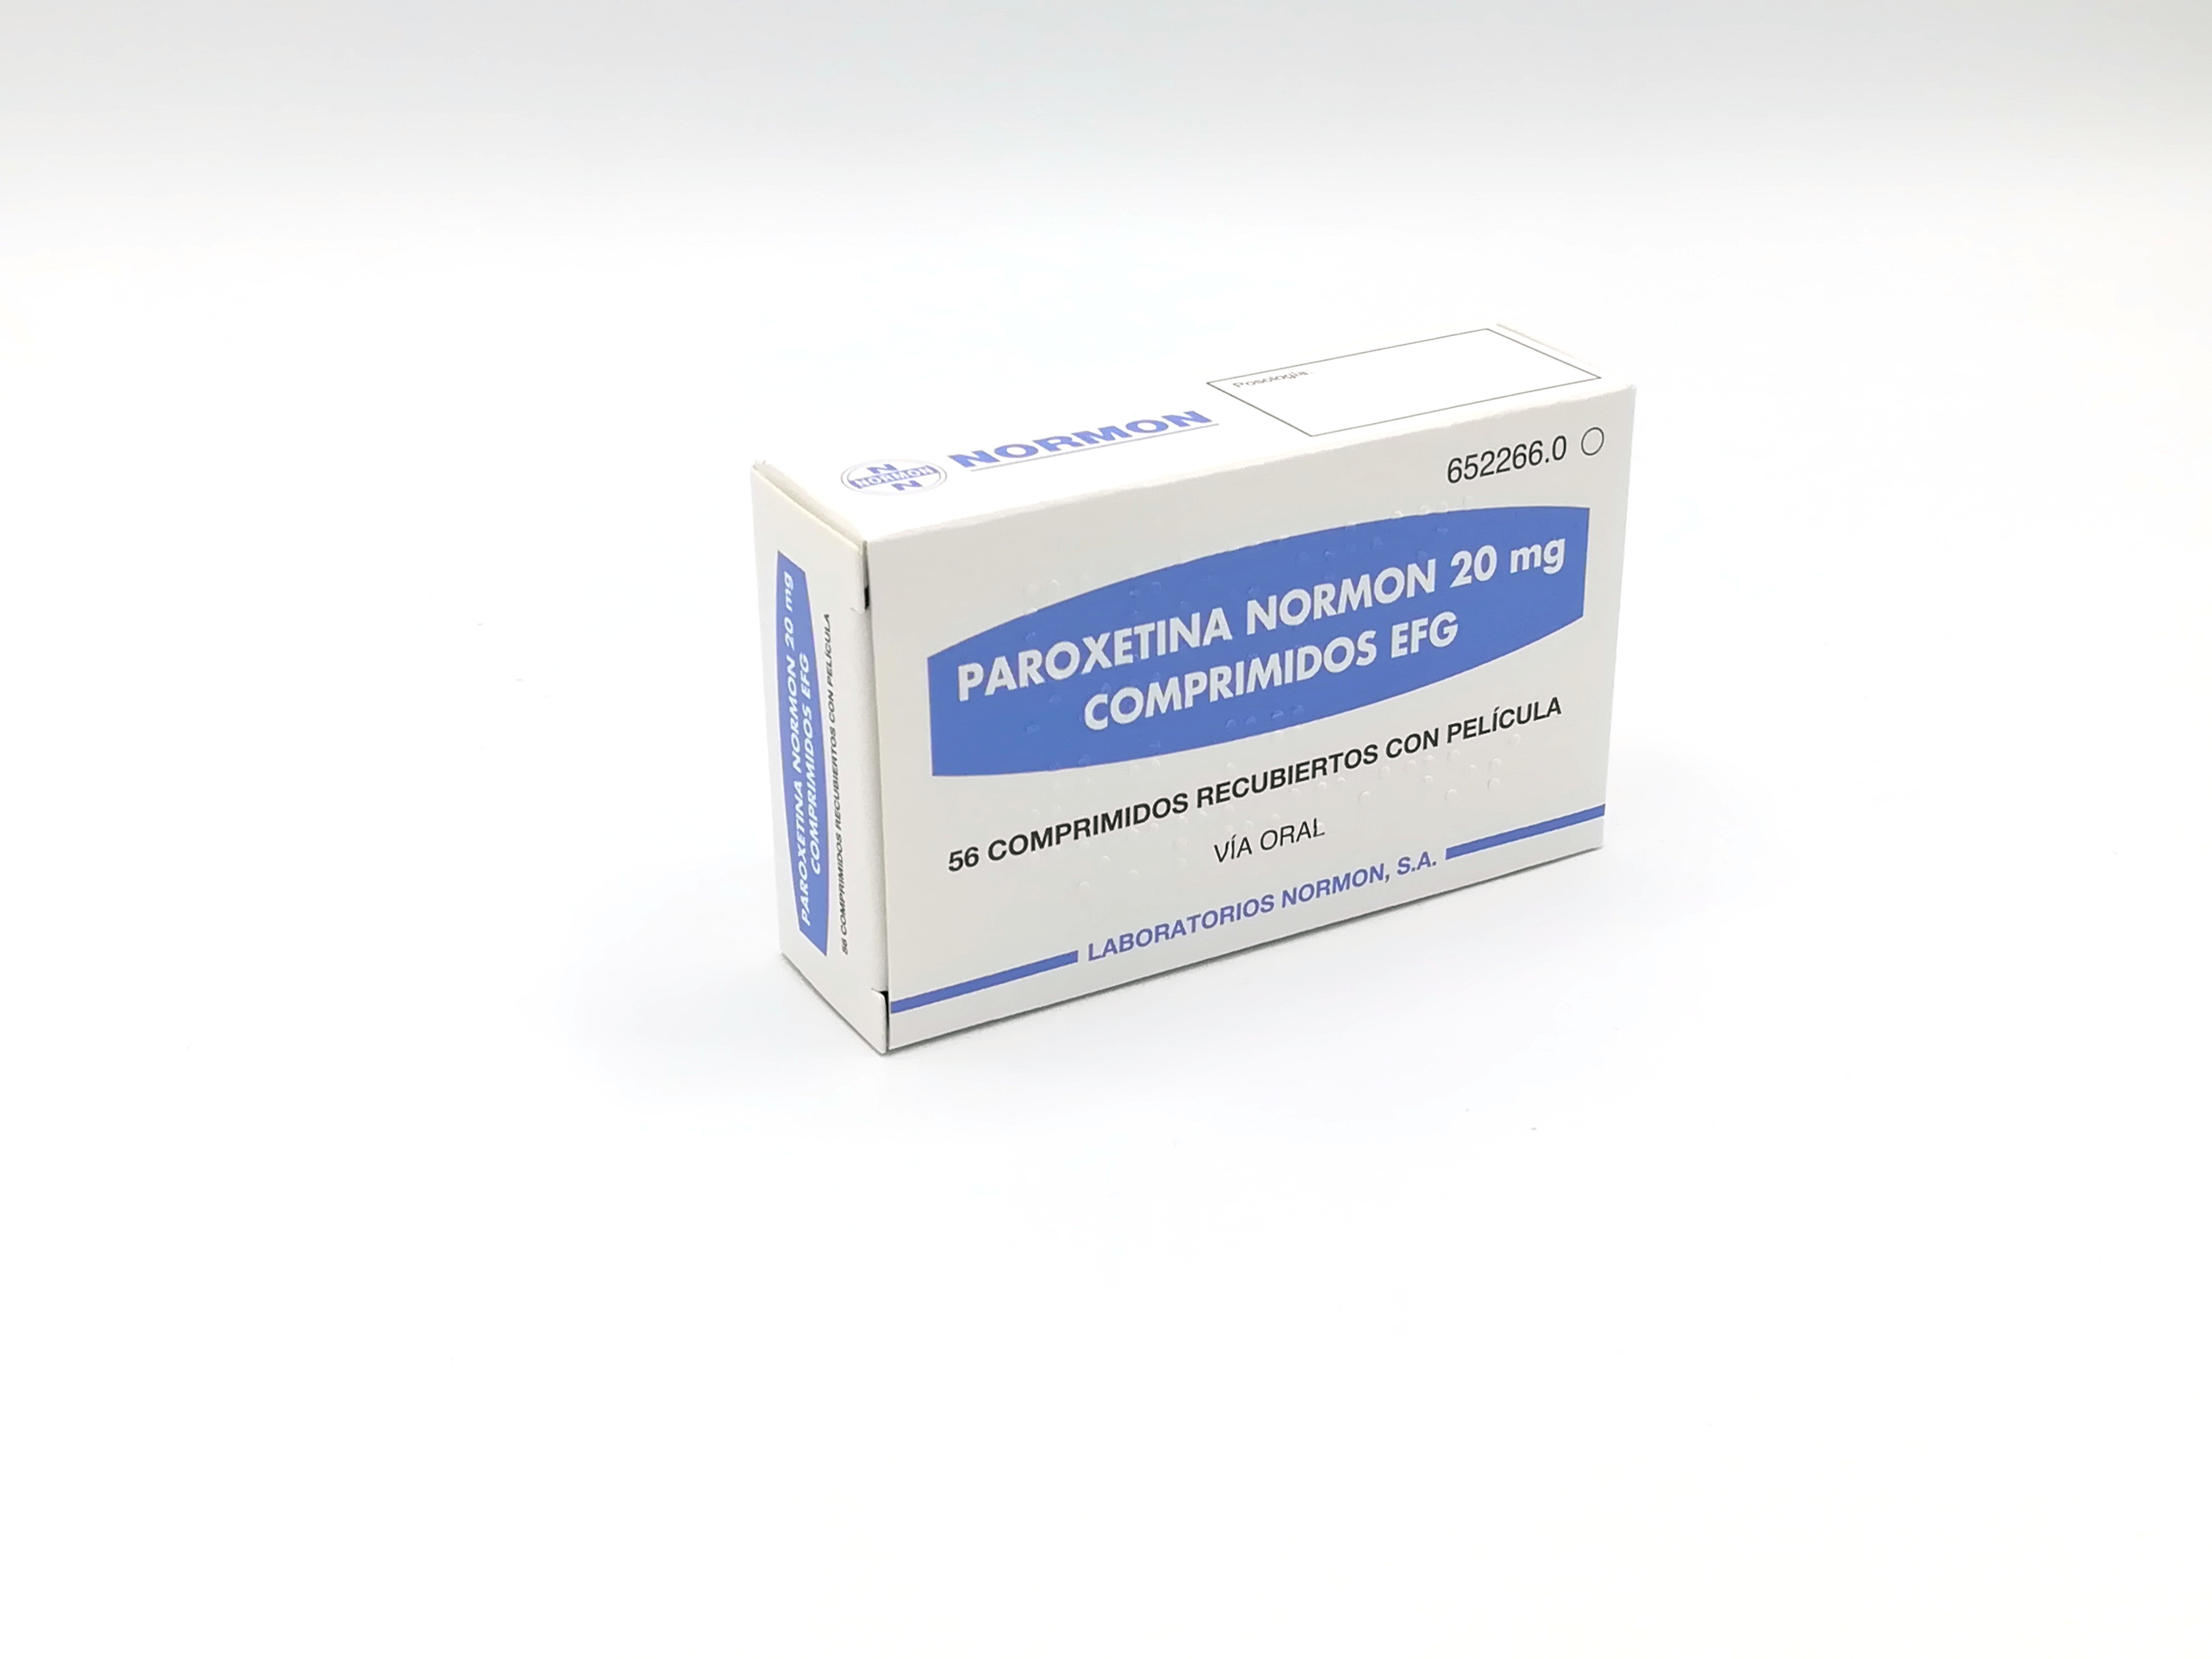 PAROXETINA NORMON EFG 20 mg 14 COMPRIMIDOS RECUBIERTOS - Farmacéuticos